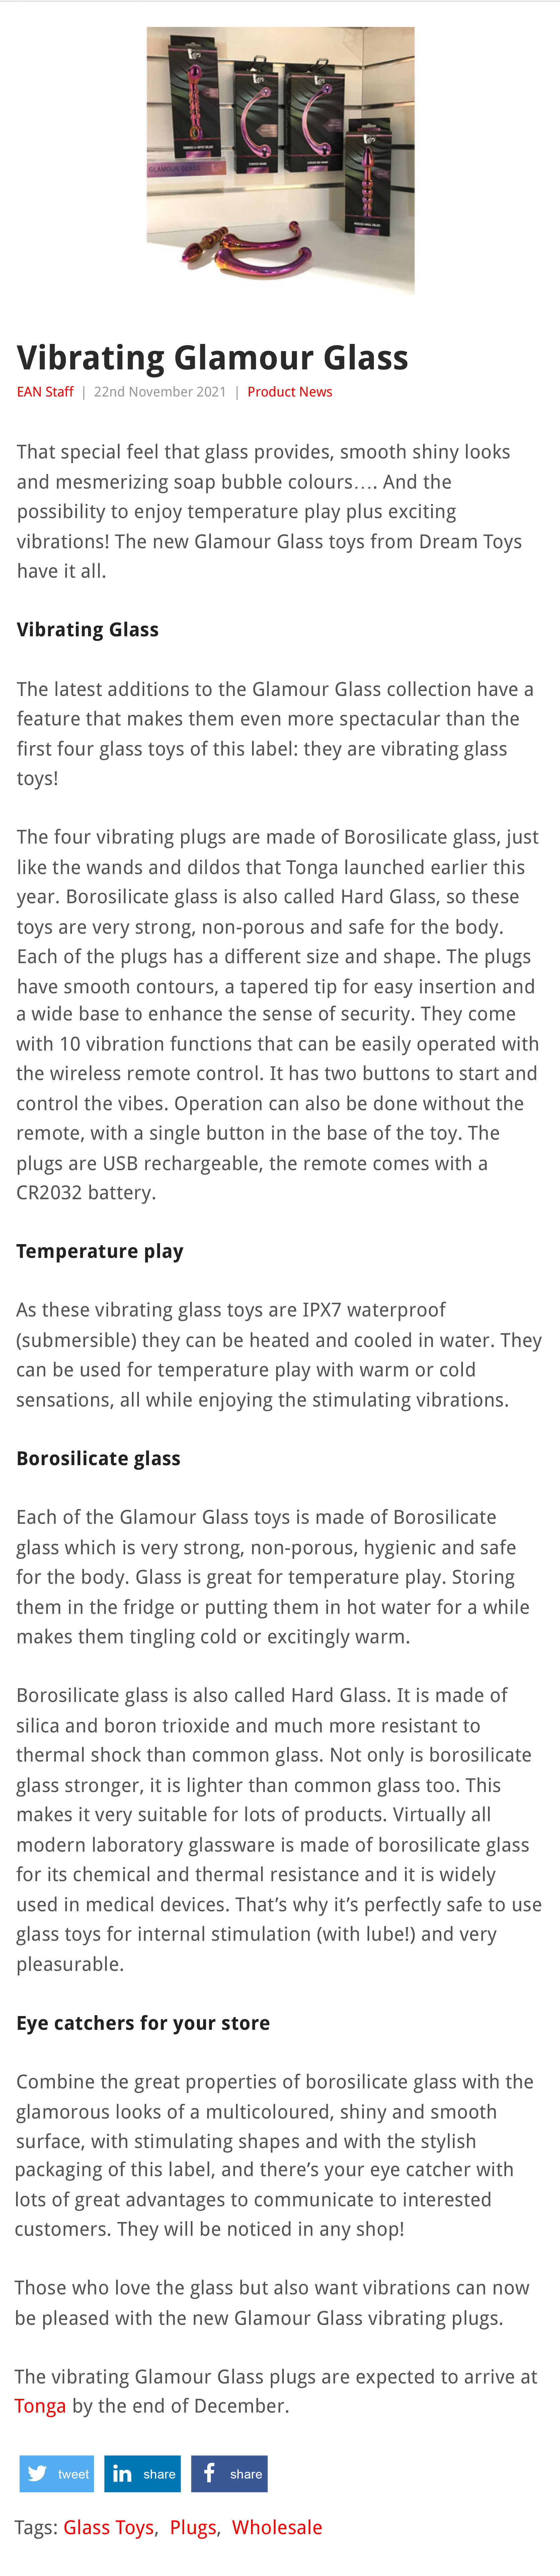 2021-11 EAN Online - Vibrating Glamour Glass